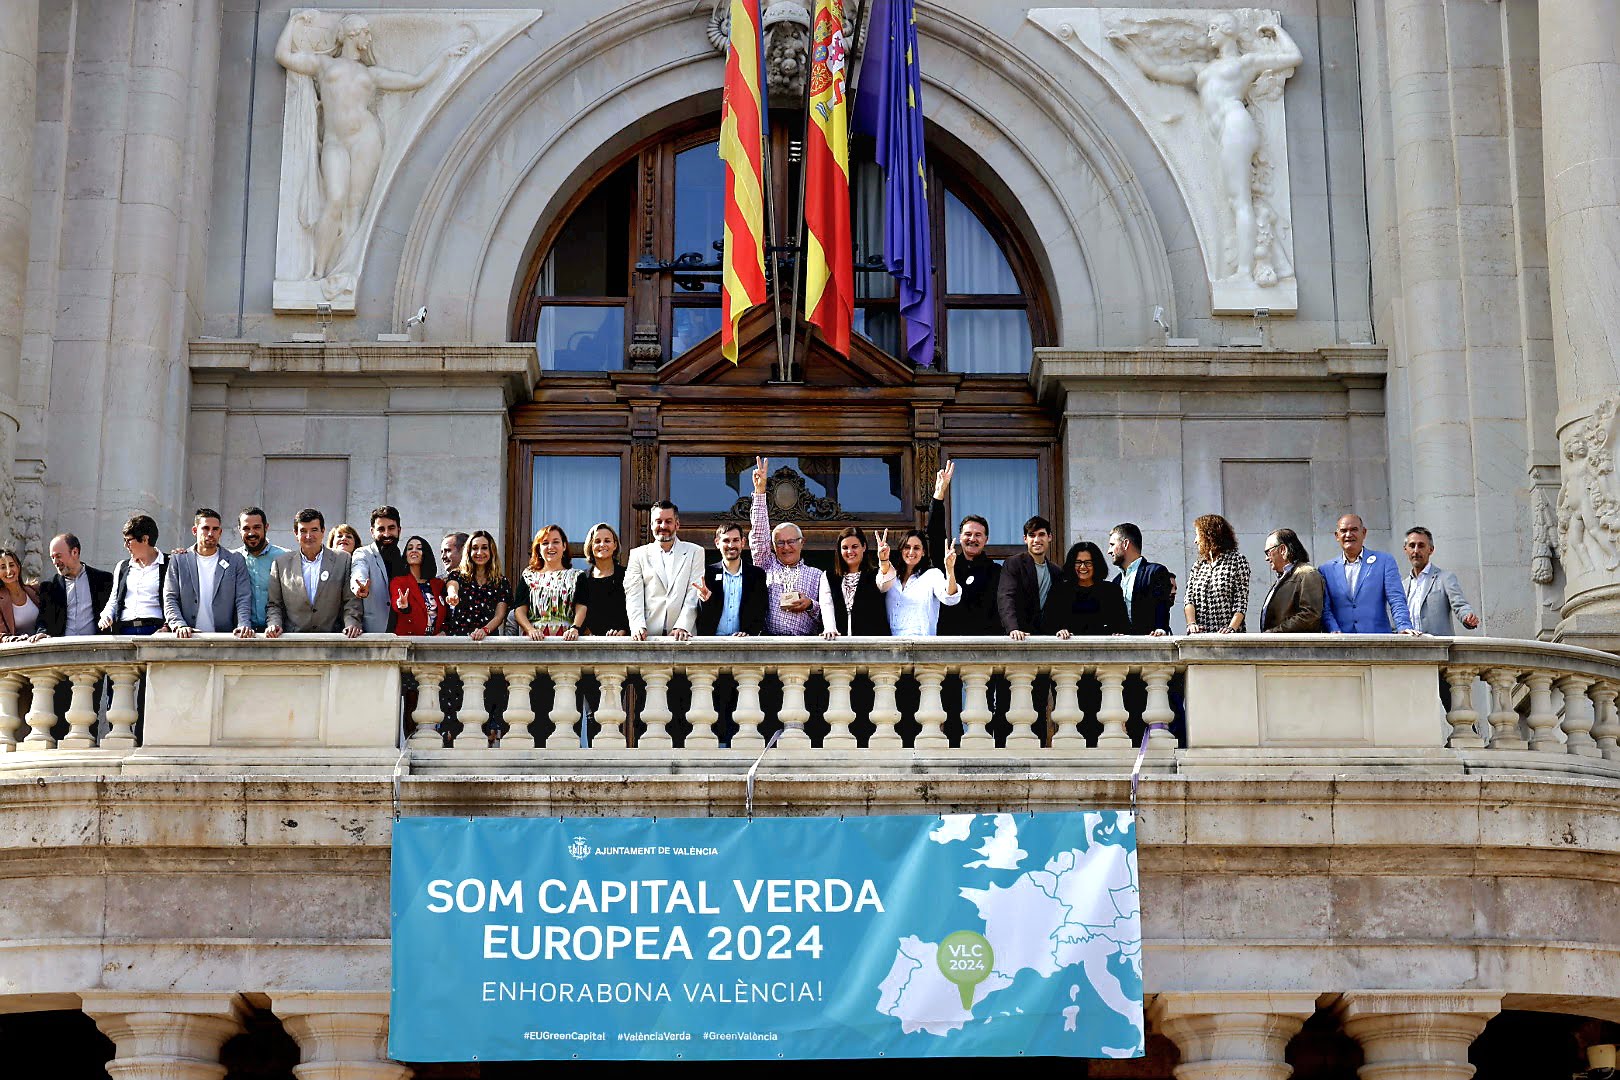 Fotografia de la celebració al balcó de l'Ajuntament pel nomenament de València com a Capital Verda Europea